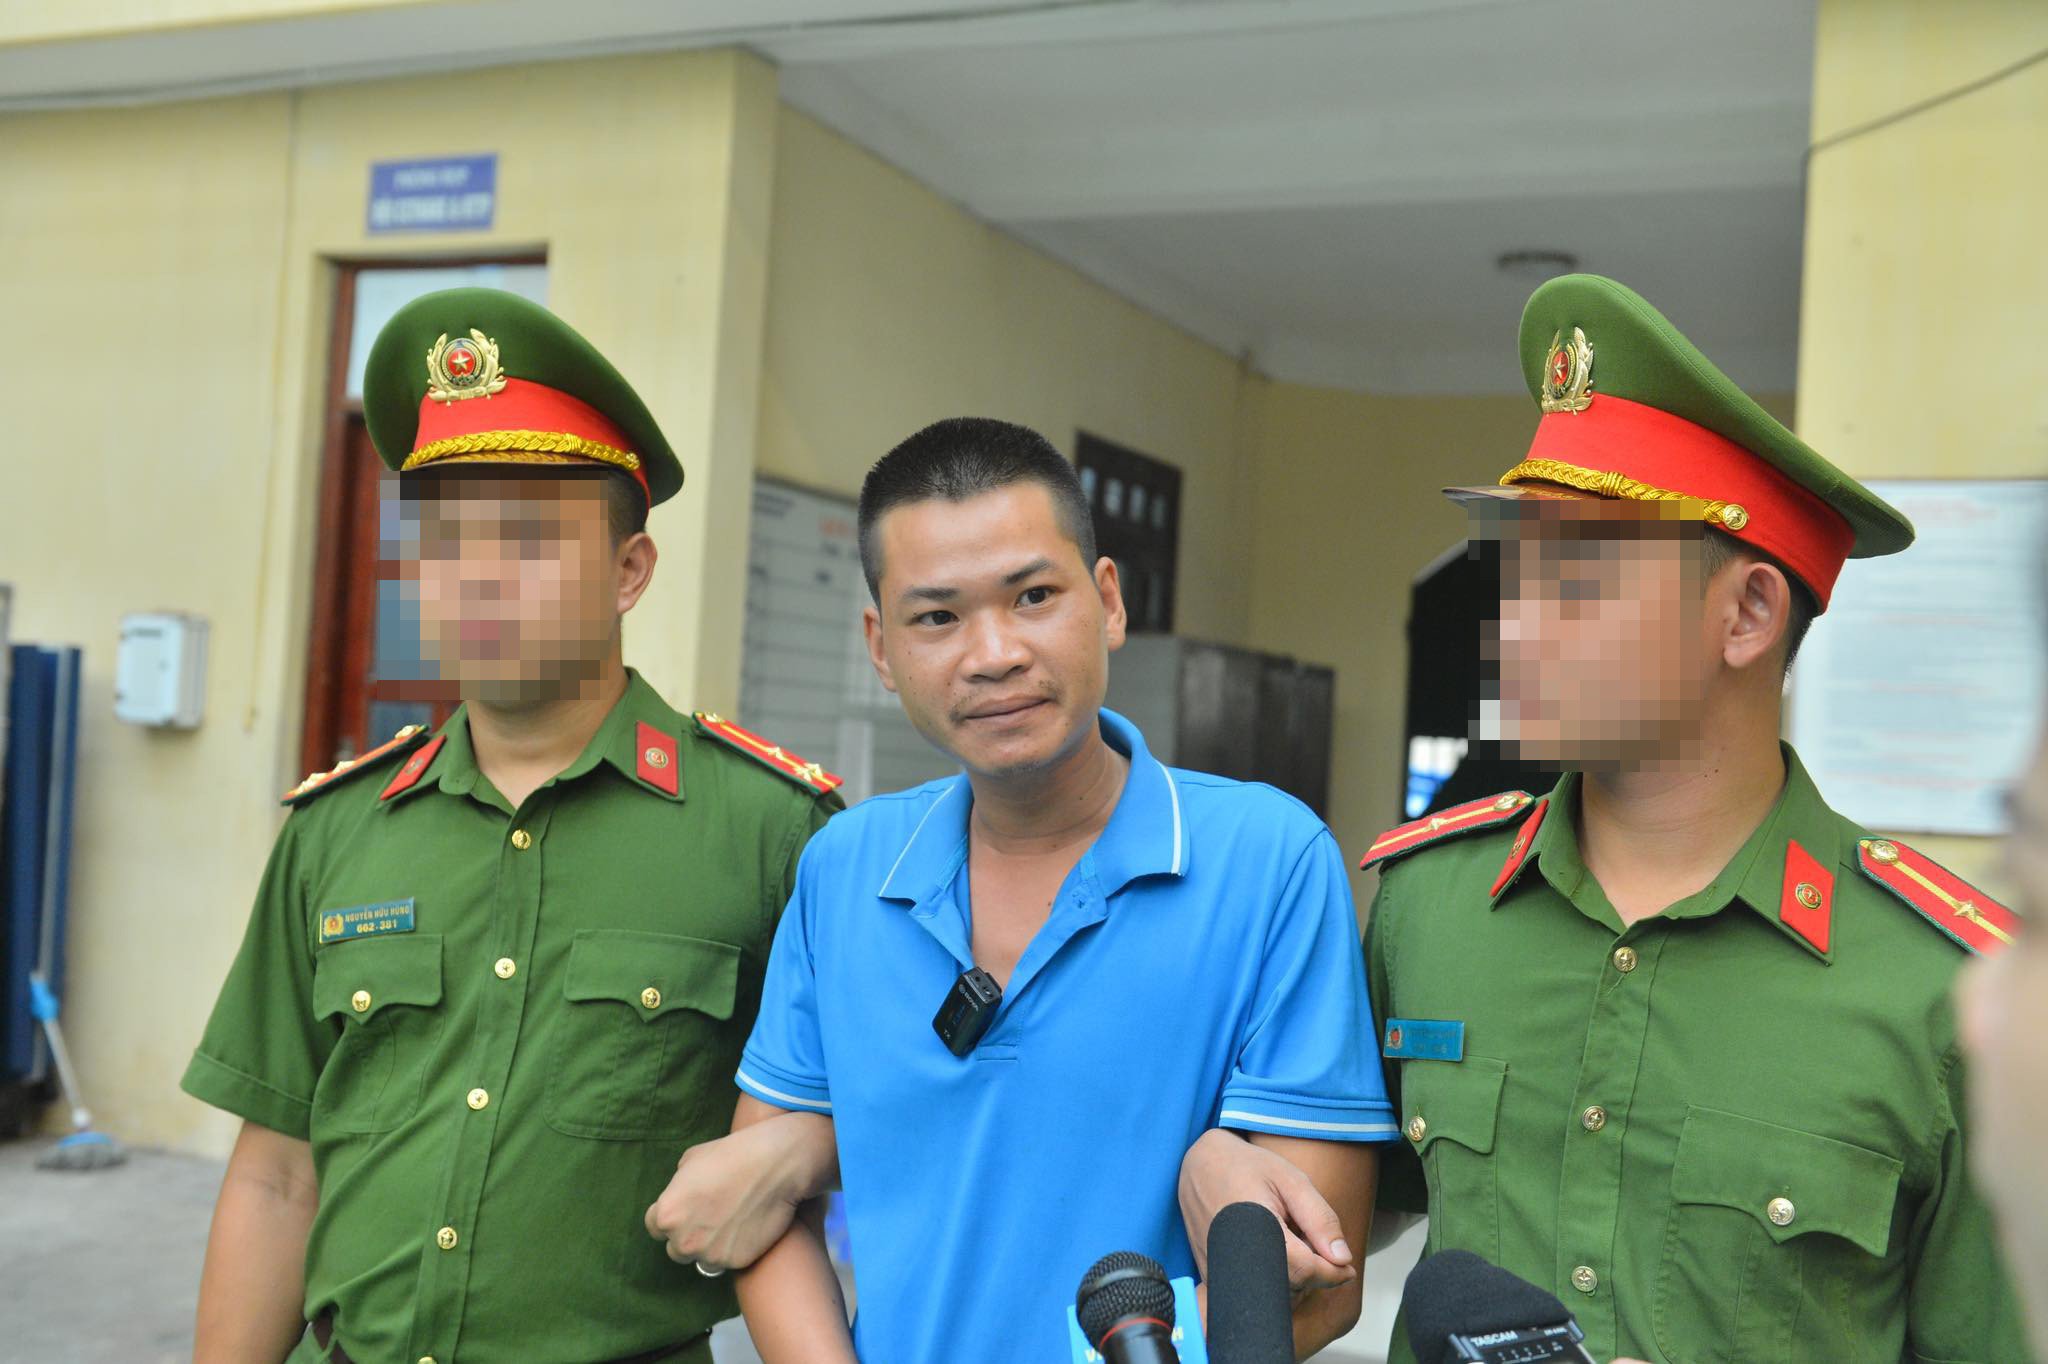 Vụ tài xế xe ôm bị sát hại dã man ở Hà Nội: Bố mẹ nạn nhân không thể tin đó là sự thật - 2